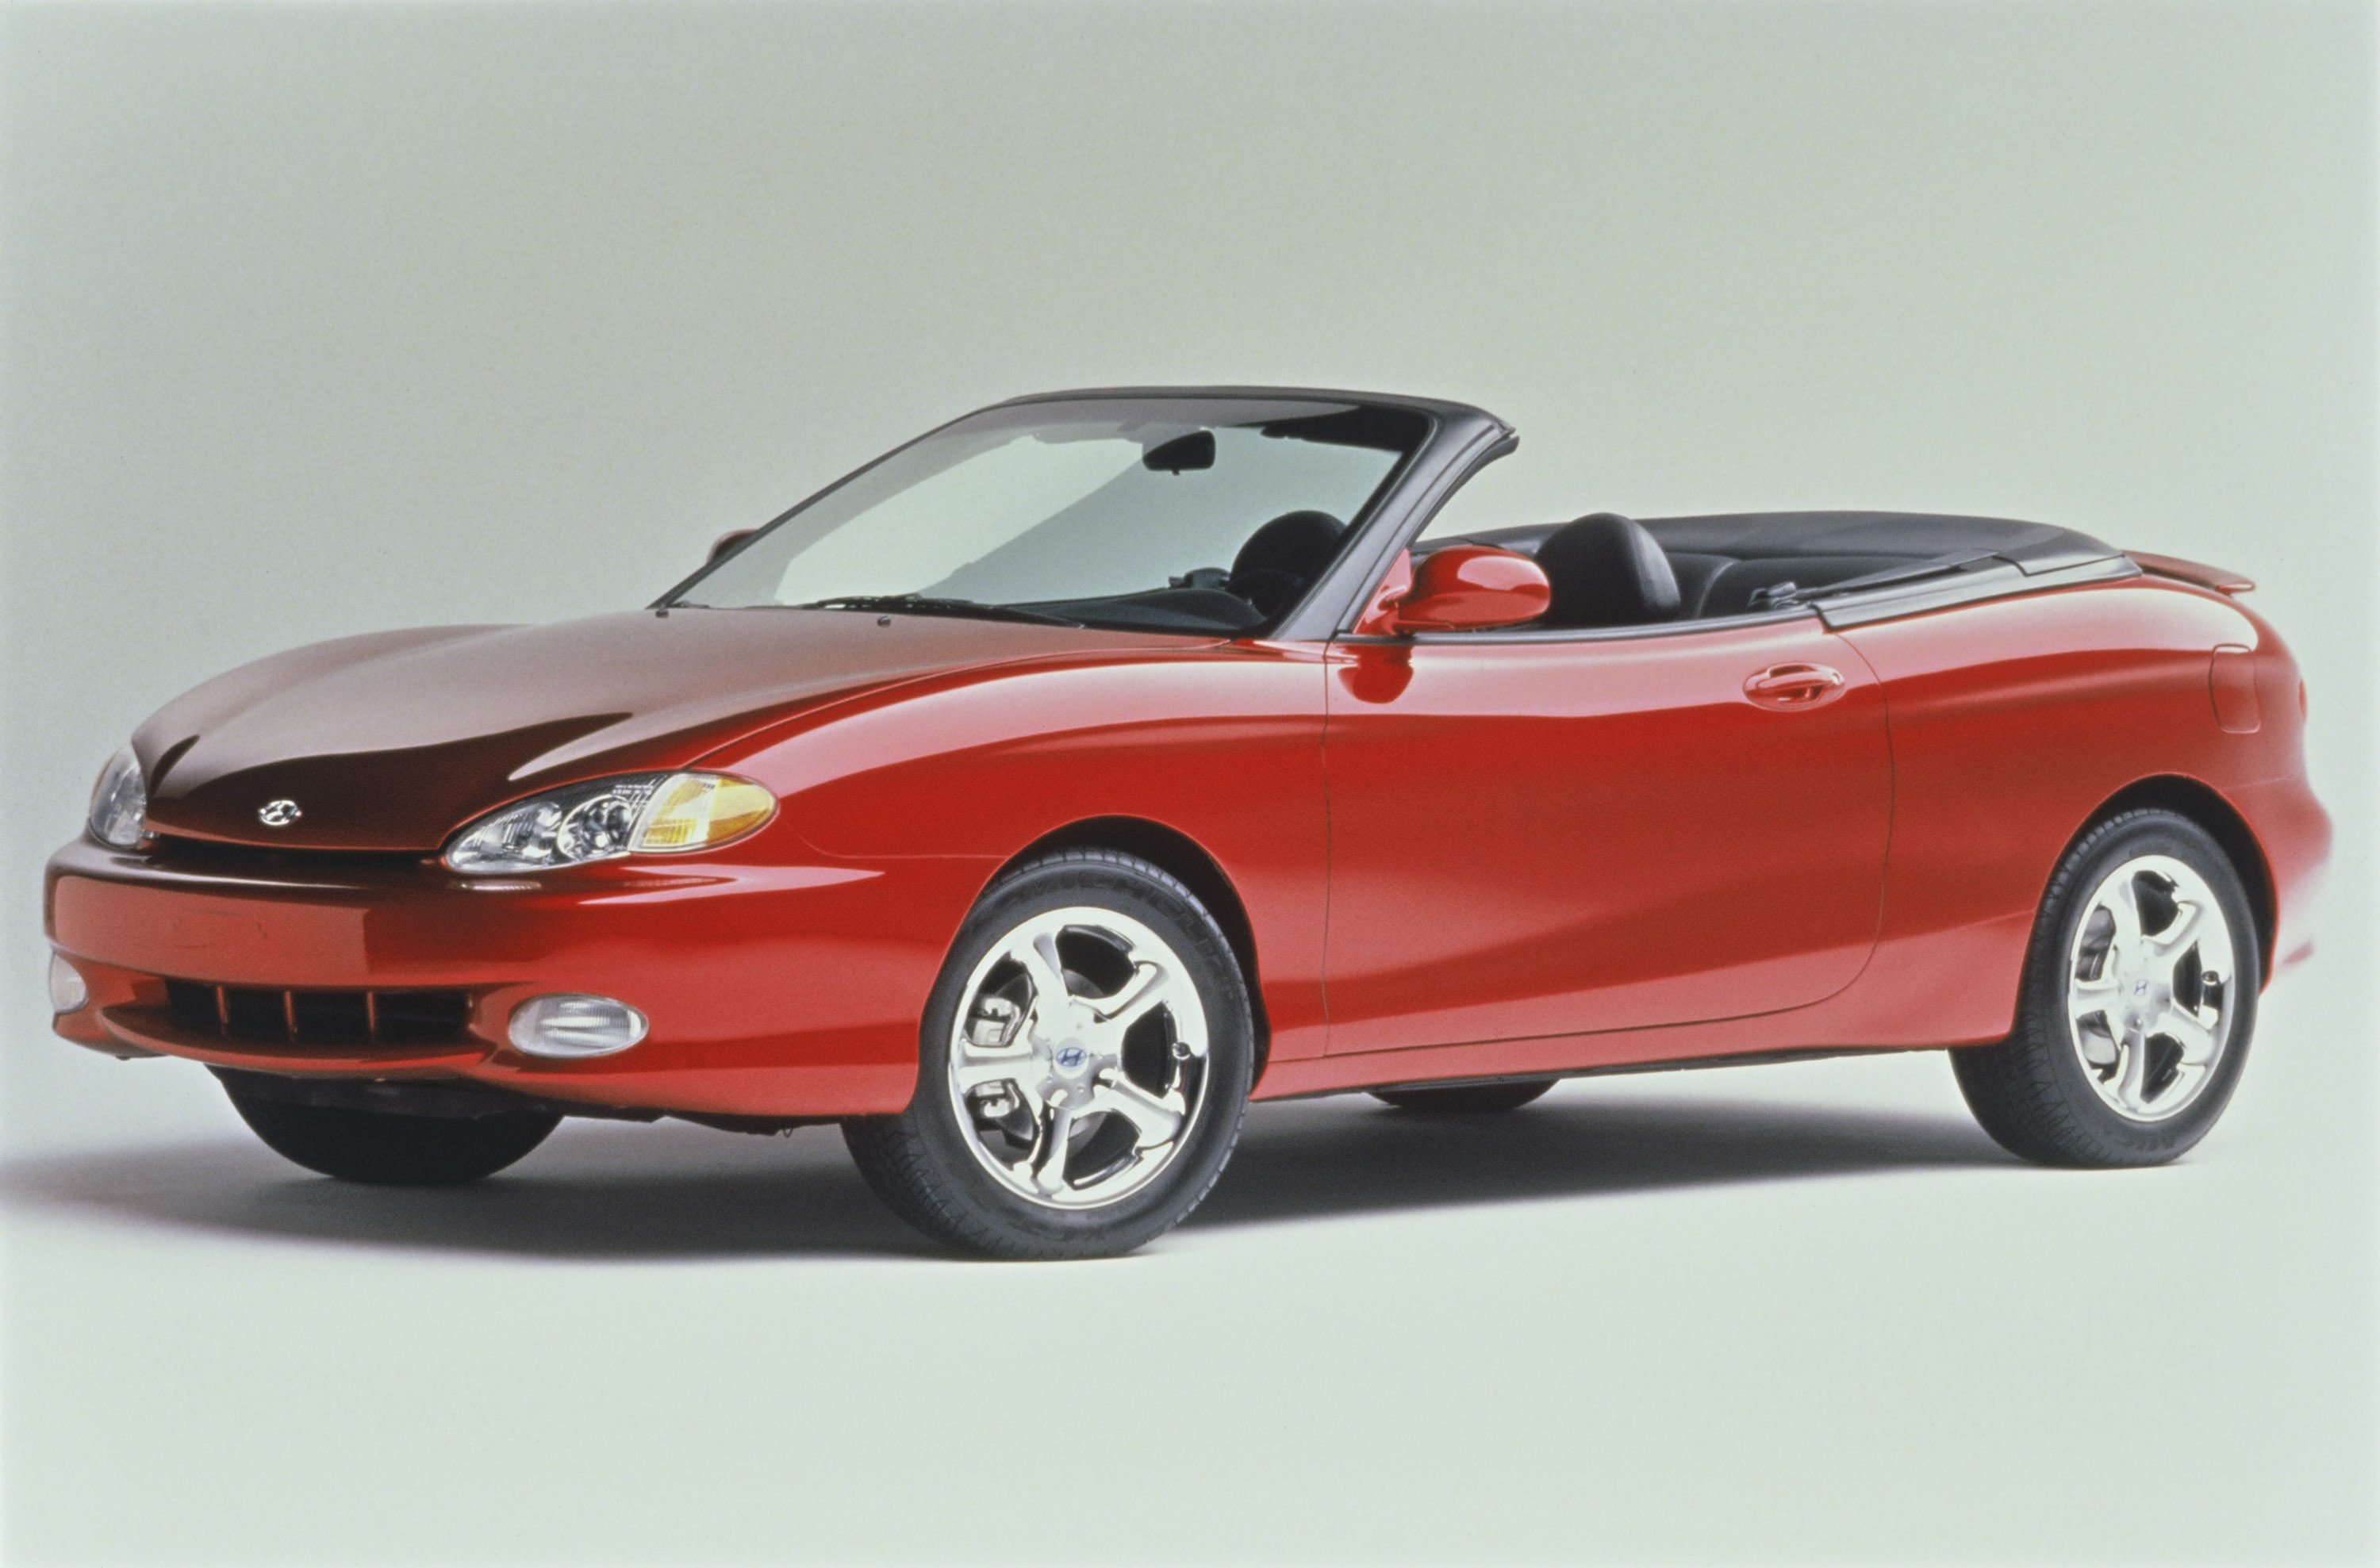 Hyundai Tiburon Convertible Concept, 1997